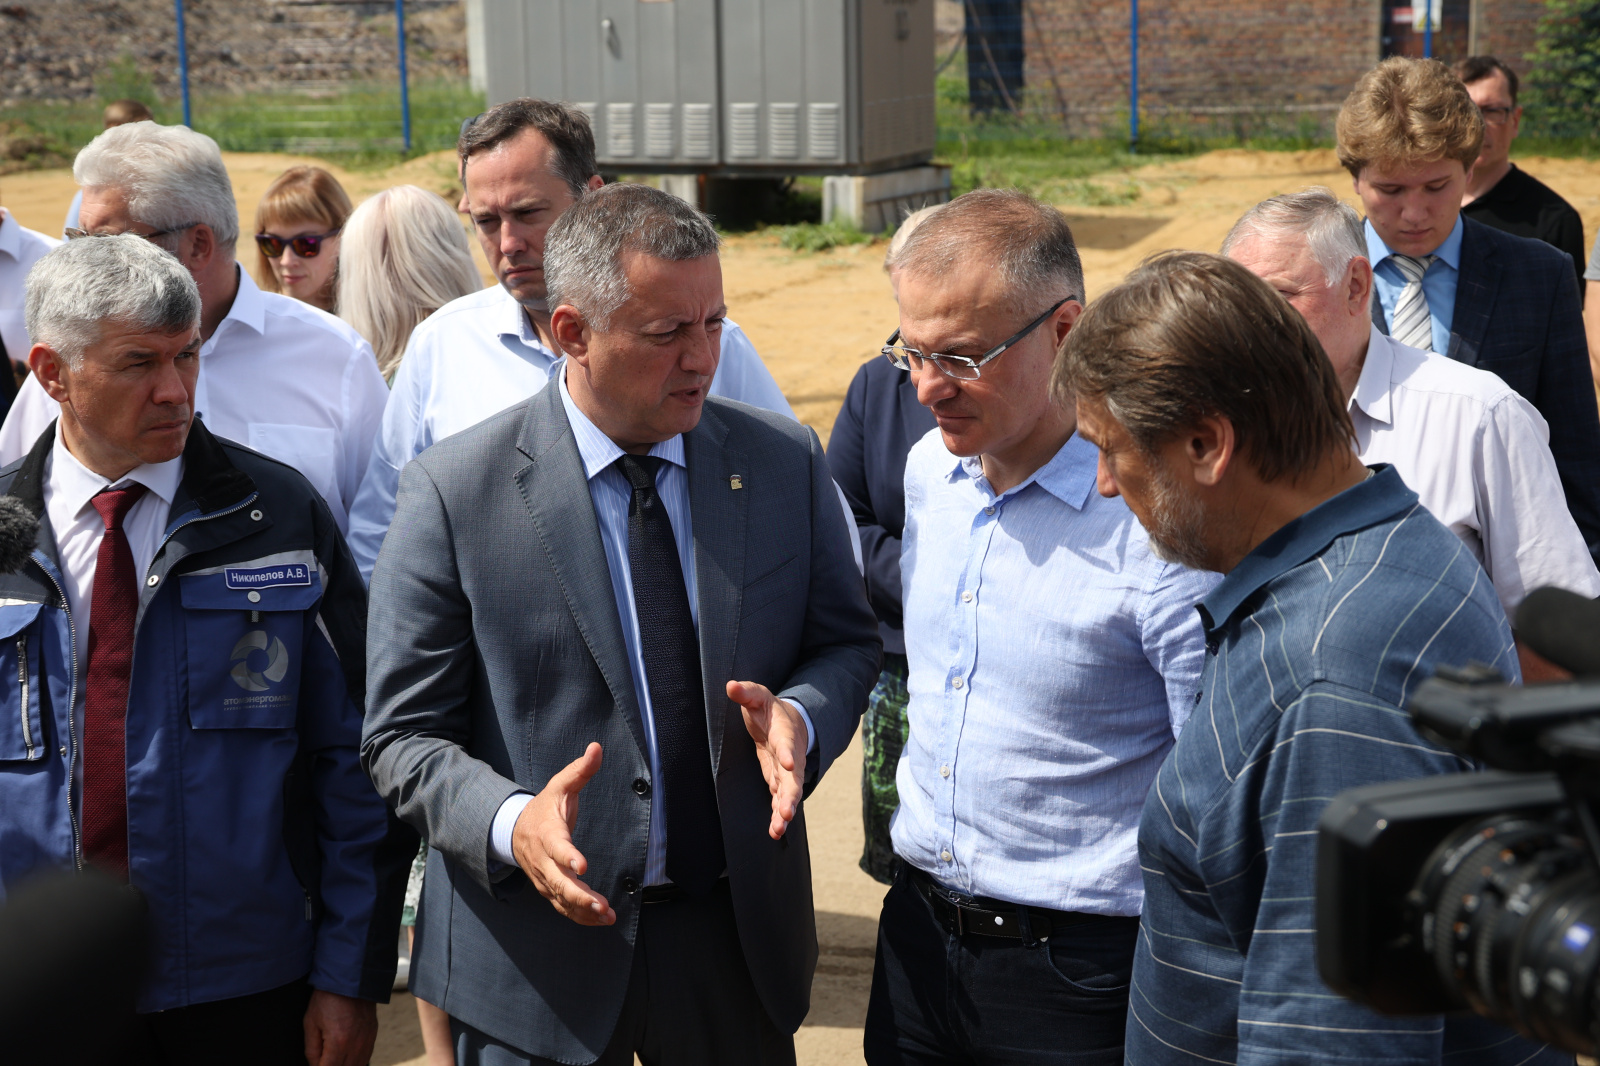 Губернатор и сенаторы Совета Федерации посетили площадку "Усольехимпрома" 14 июля